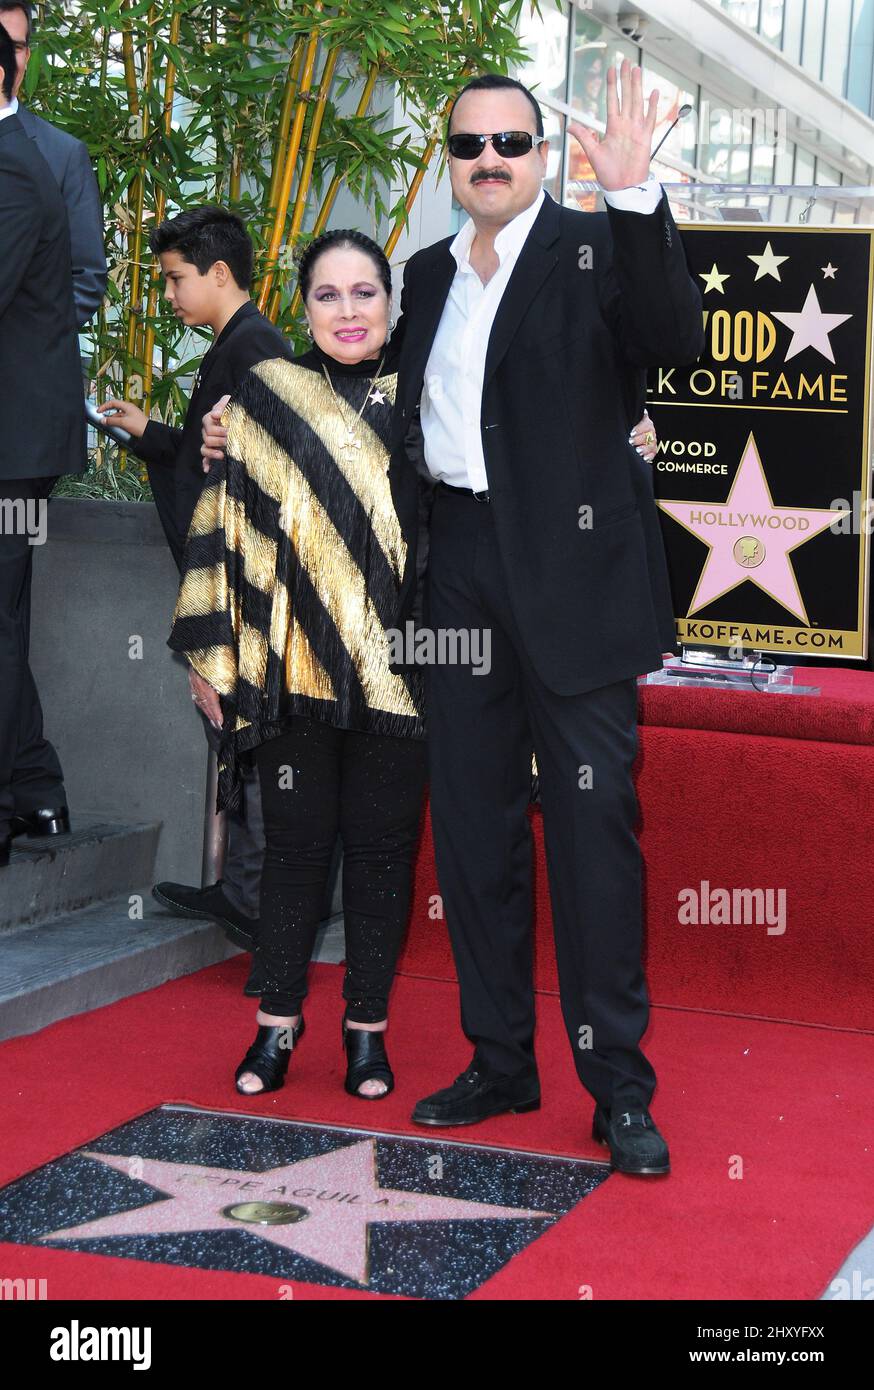 Flor Silvestre y Pepe Aguilar Pepe Aguilar honrados con una estrella en el Paseo de la Fama de Hollywood que se celebra frente al Live Nation Building Foto de stock